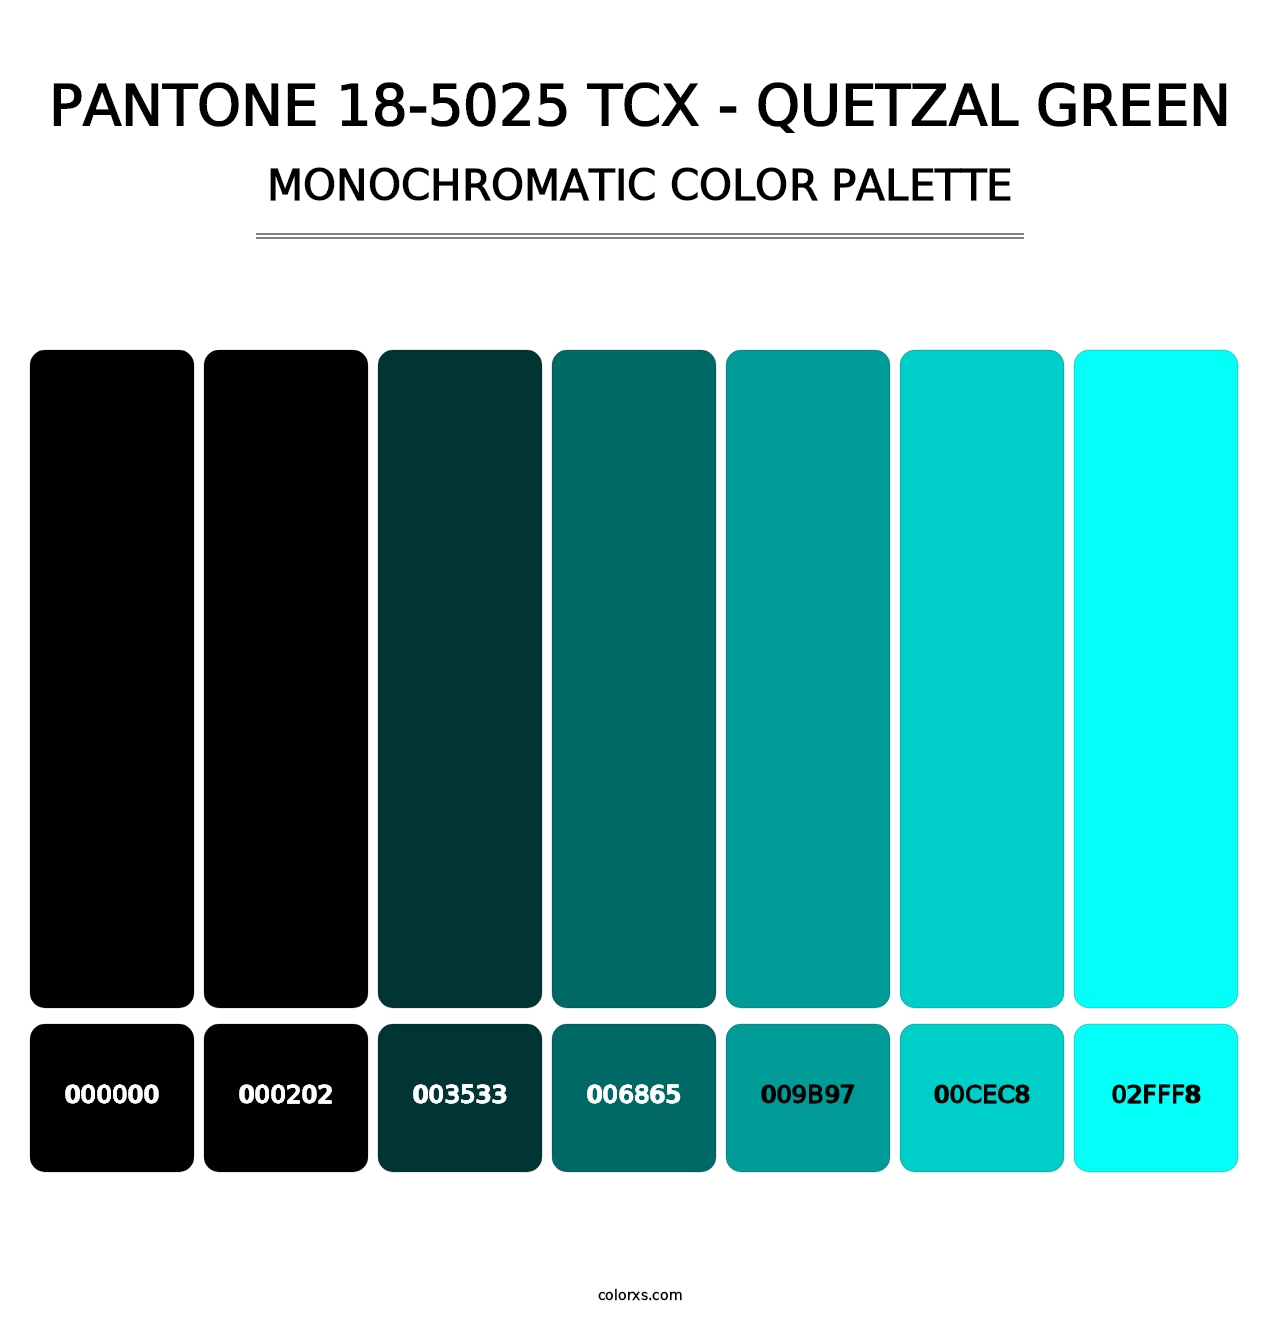 PANTONE 18-5025 TCX - Quetzal Green - Monochromatic Color Palette